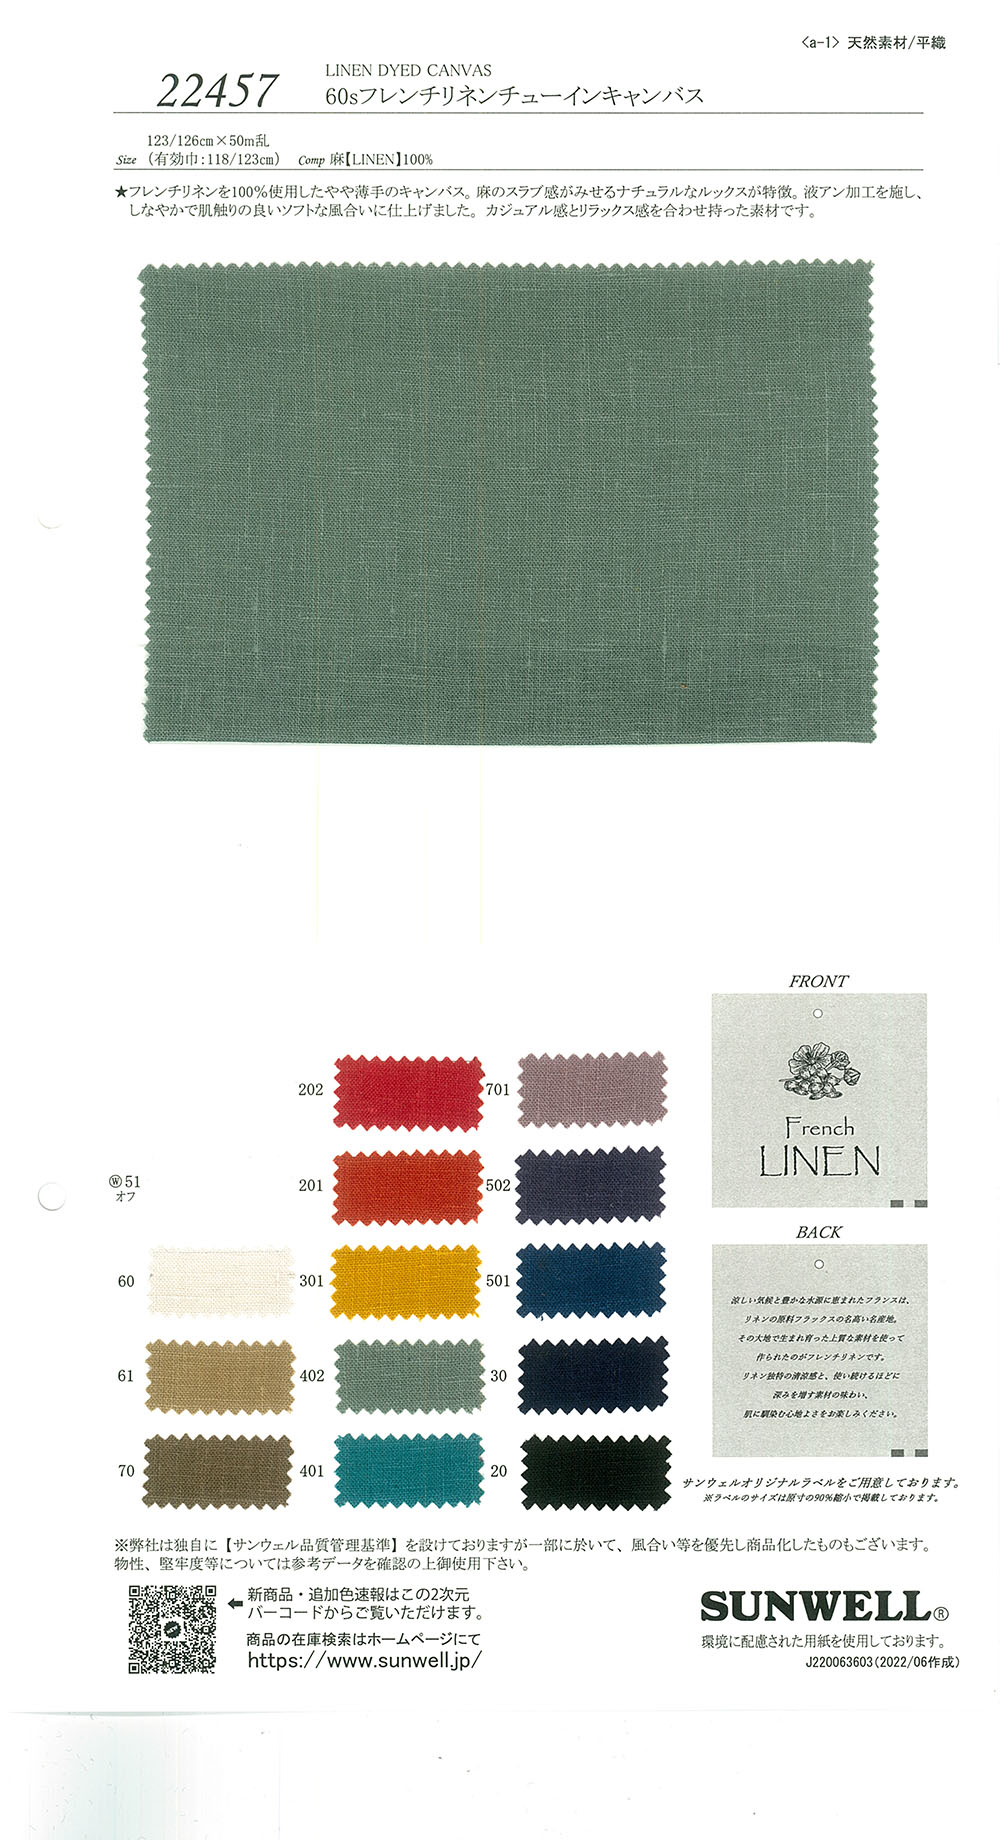 22457 60 Lona Masticada De Lino Francés De Un Hilo[Fabrica Textil] SUNWELL